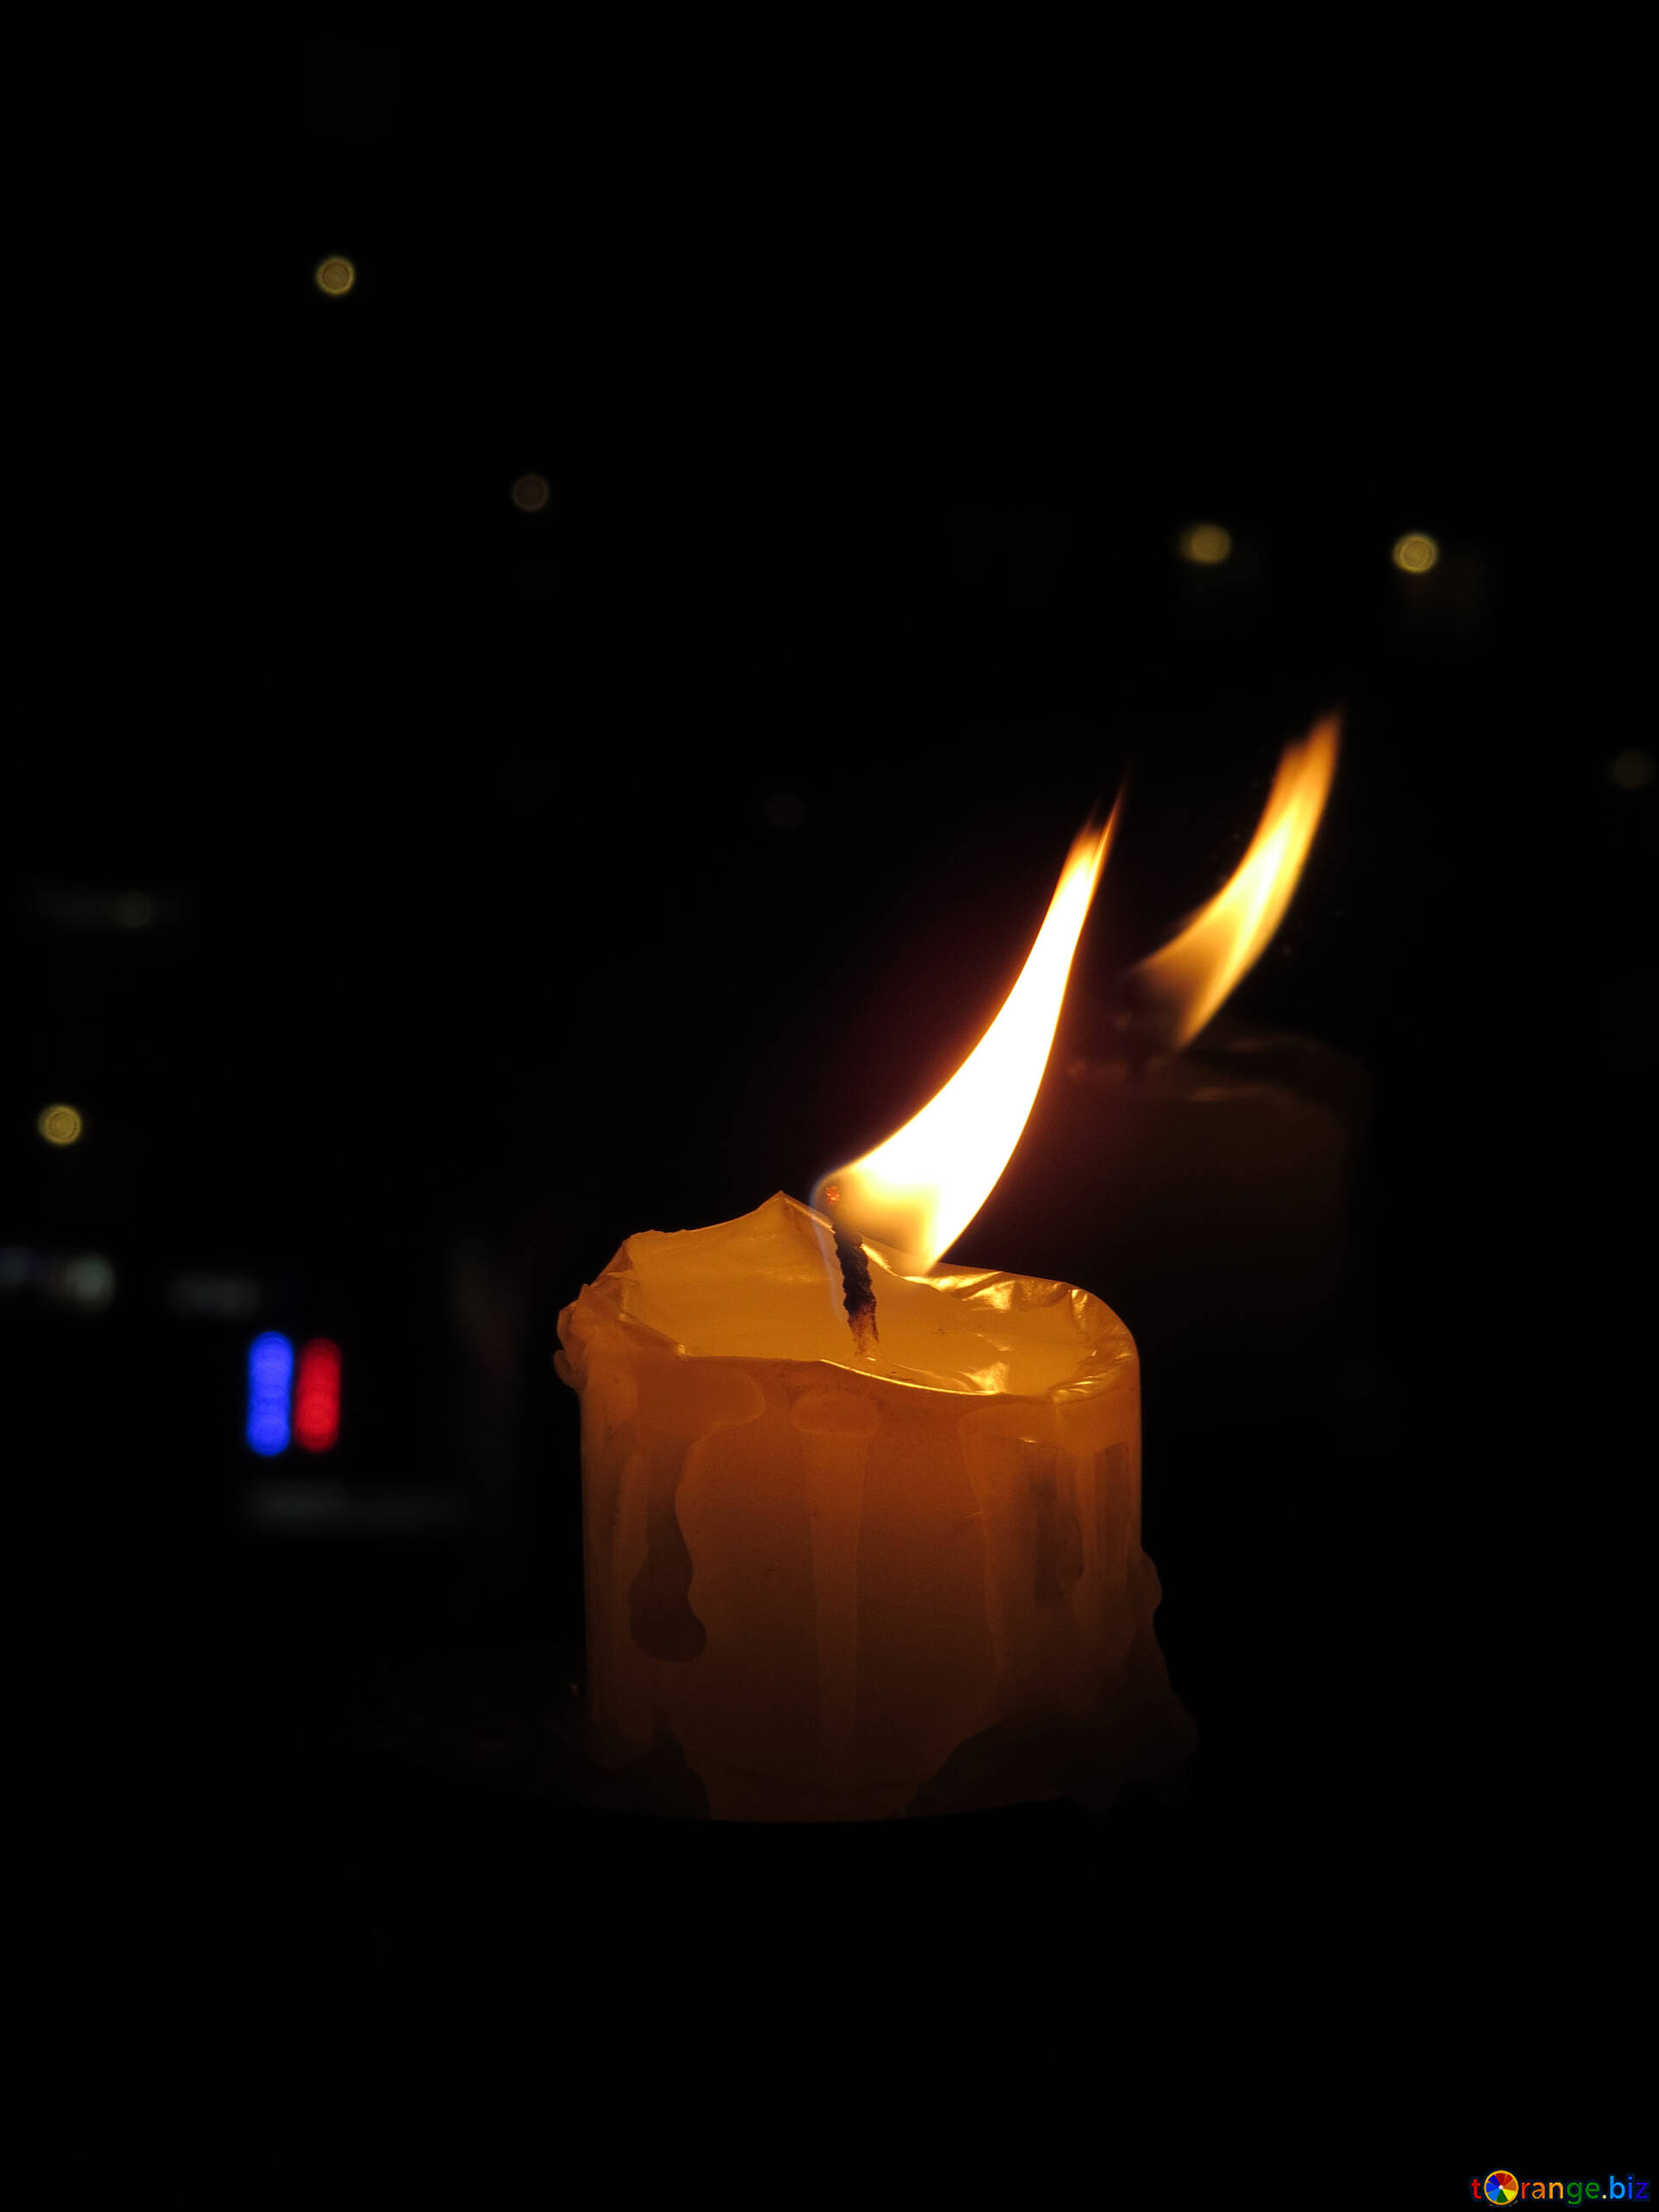 Скорбим фото со свечой 22.03. Траурная свеча. Свеча скорби. Свеча похоронная. Горящая свеча скорбим.